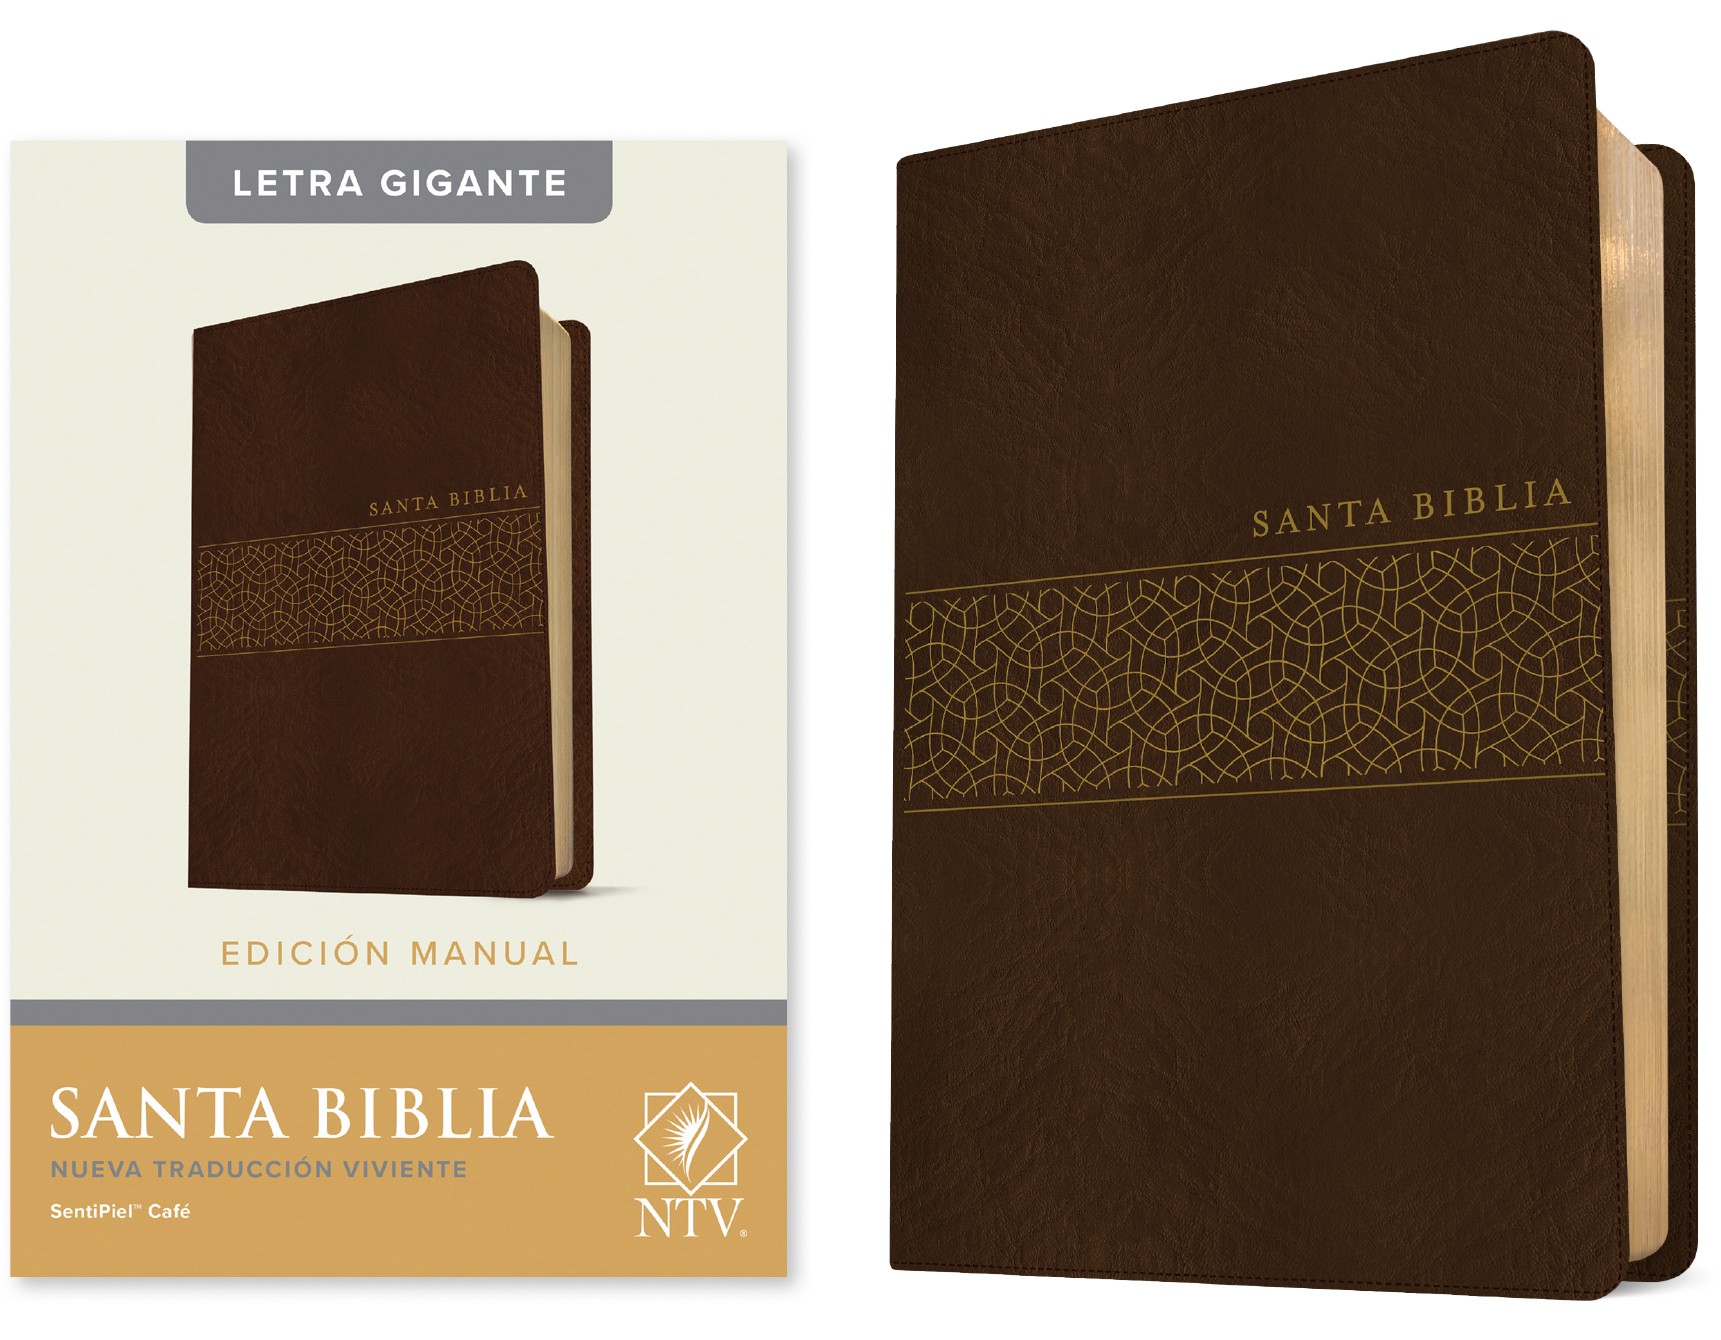  Santa Biblia NTV, Edición manual, letra gigante